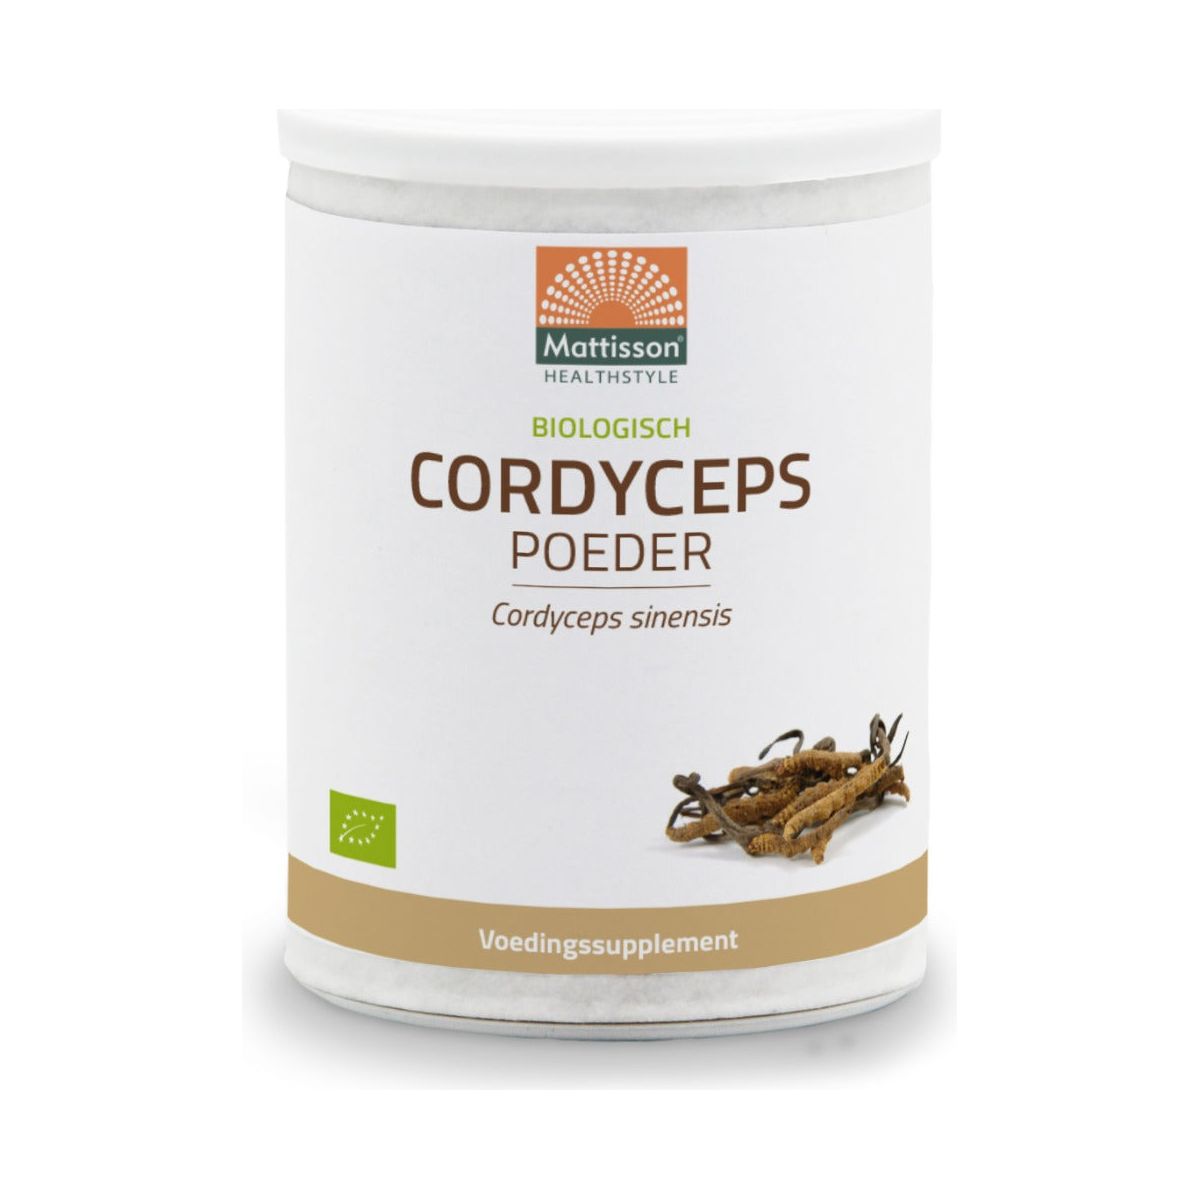 Biologisch Cordyceps poeder - 100 g Supplement Mattisson   